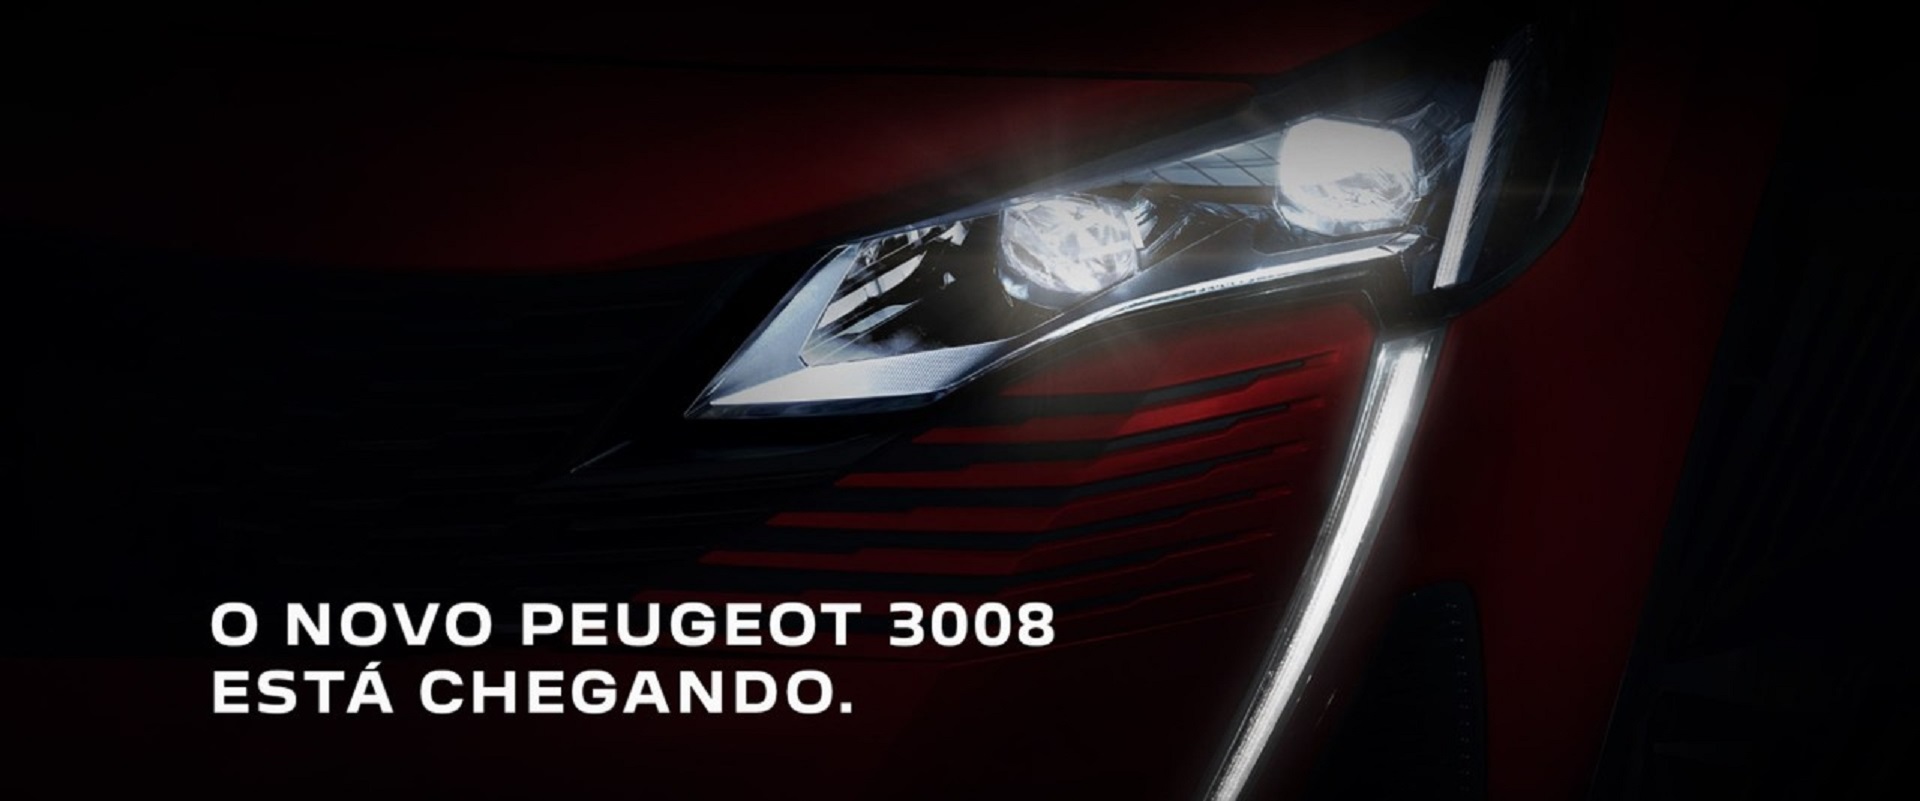 Novo Peugeot 3008